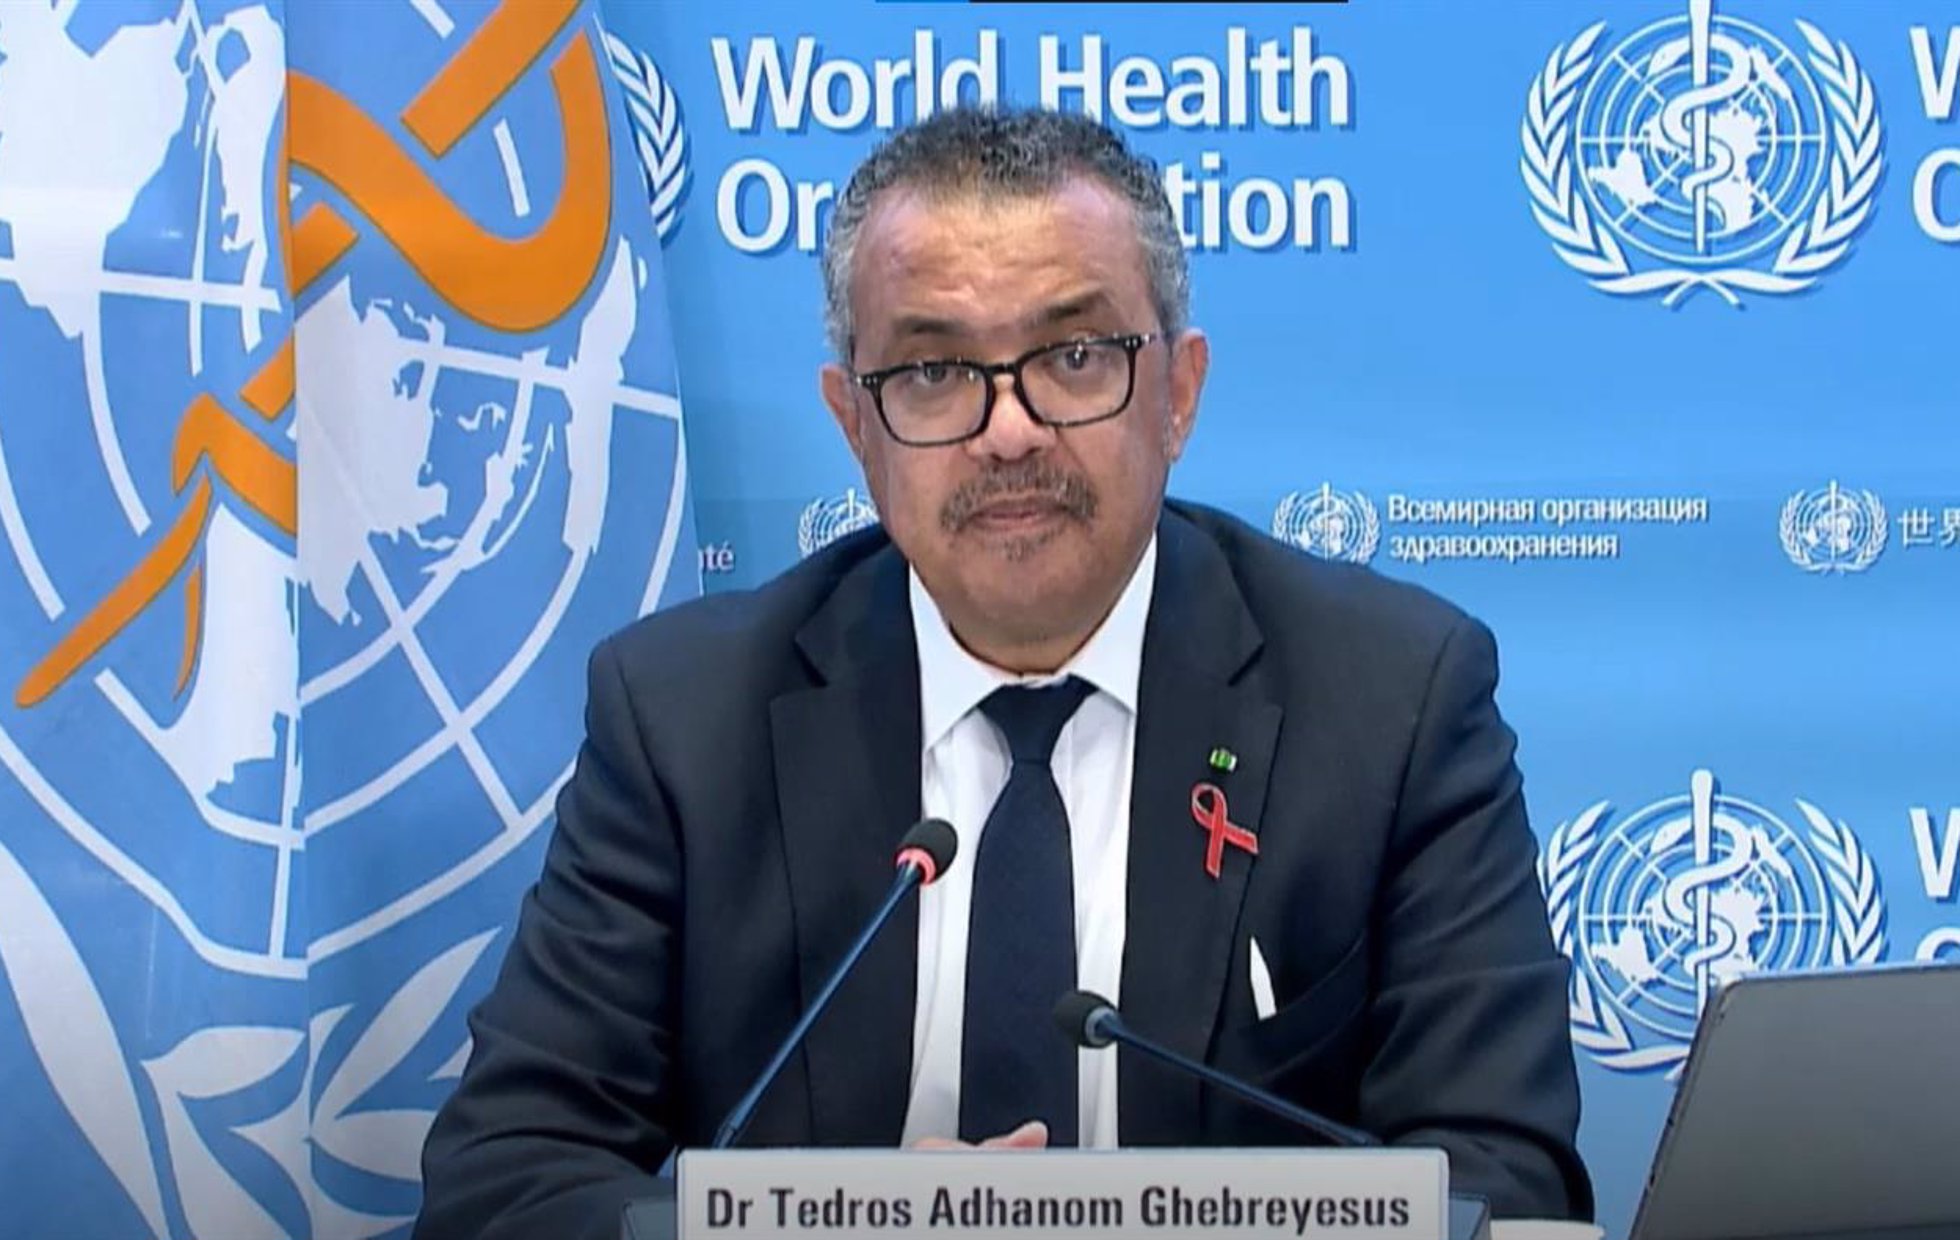 El director general de la Organización Mundial de la Salud (OMS), Tedros Adhanom Ghebreyesus, en rueda de prensa tras la Asamblea Mundial de la Salud. A 1 de diciembre de 2021.